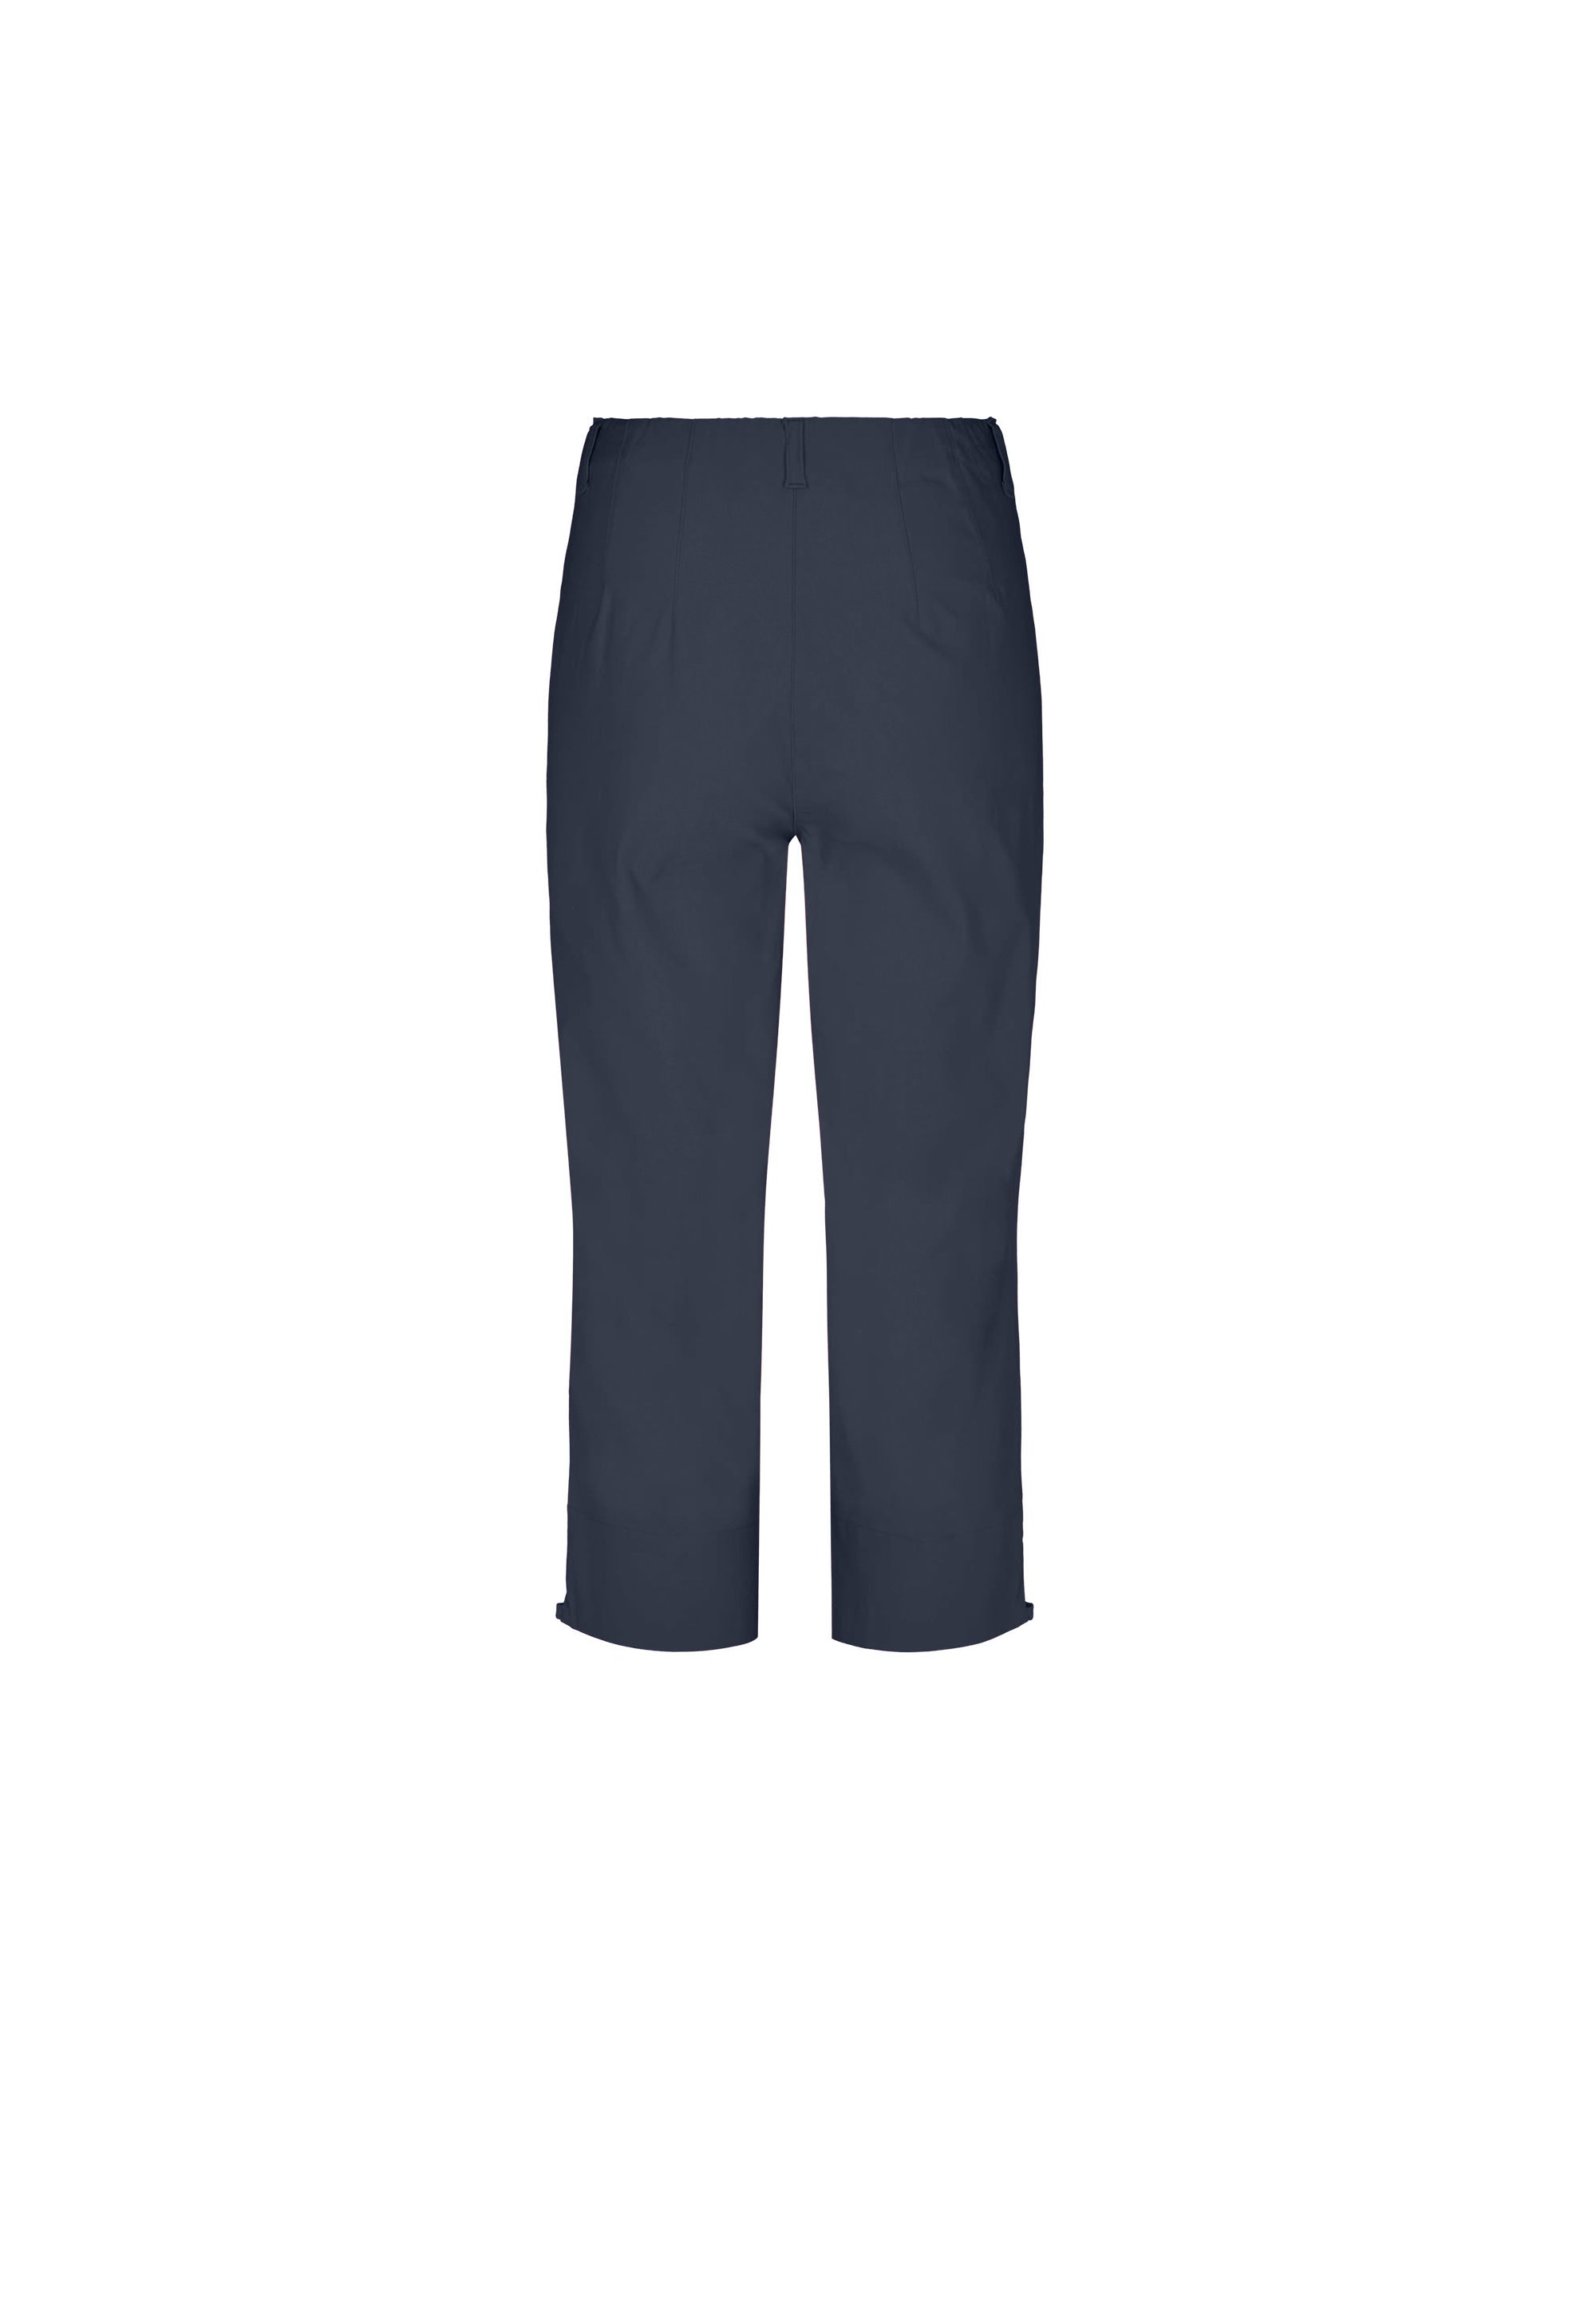 LAURIE  Anabelle Regular Capri Medium Length Trousers REGULAR 49970 Navy